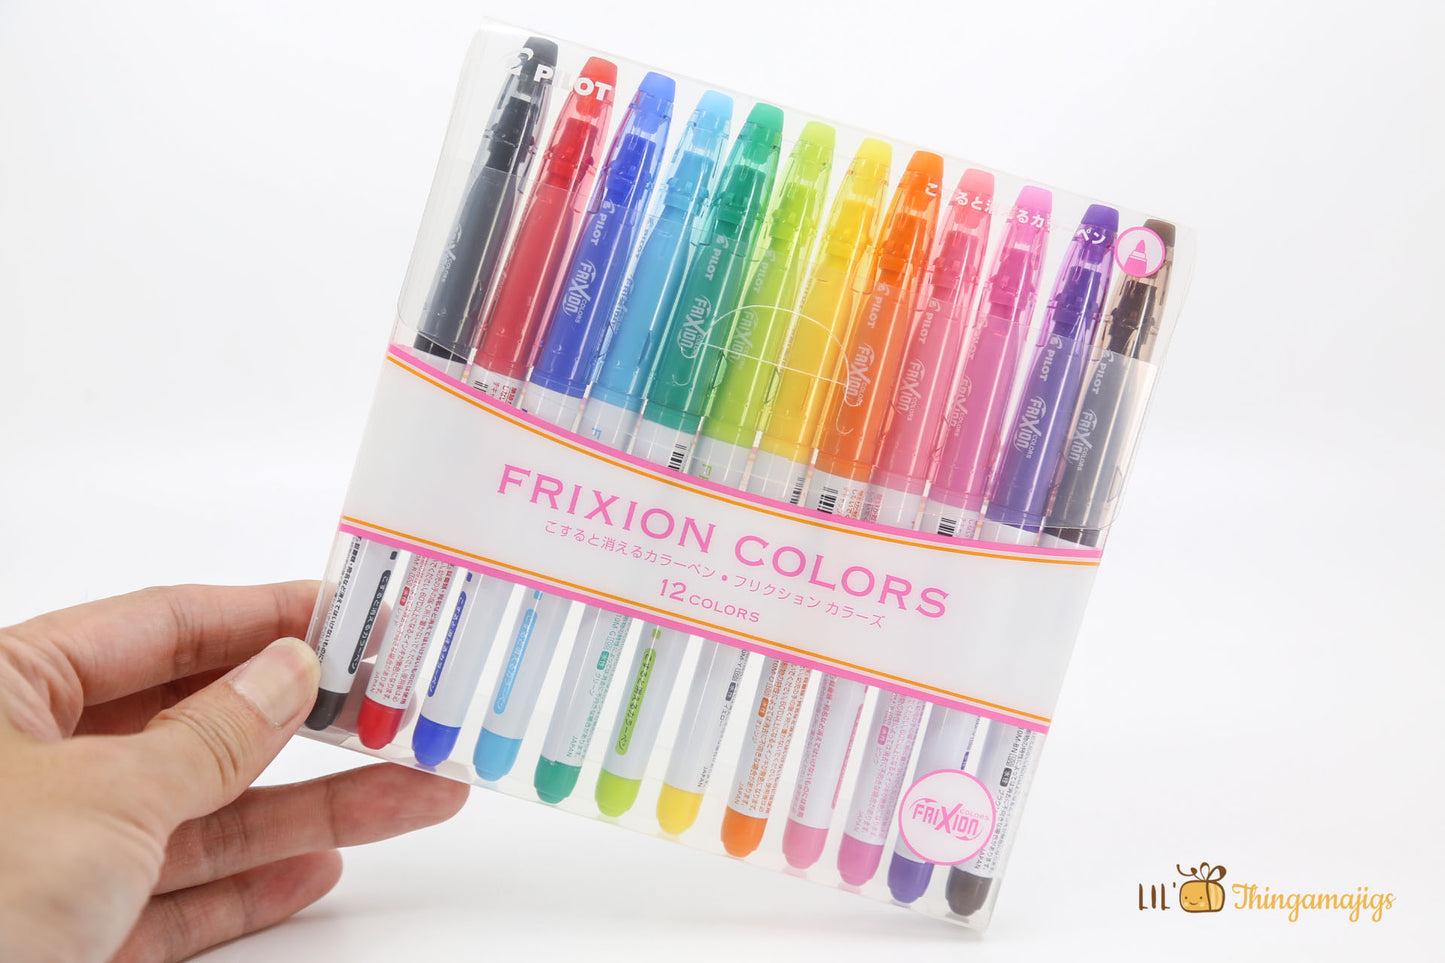 Pilot Frixion Colors Erasable Marker Set (12 colors)